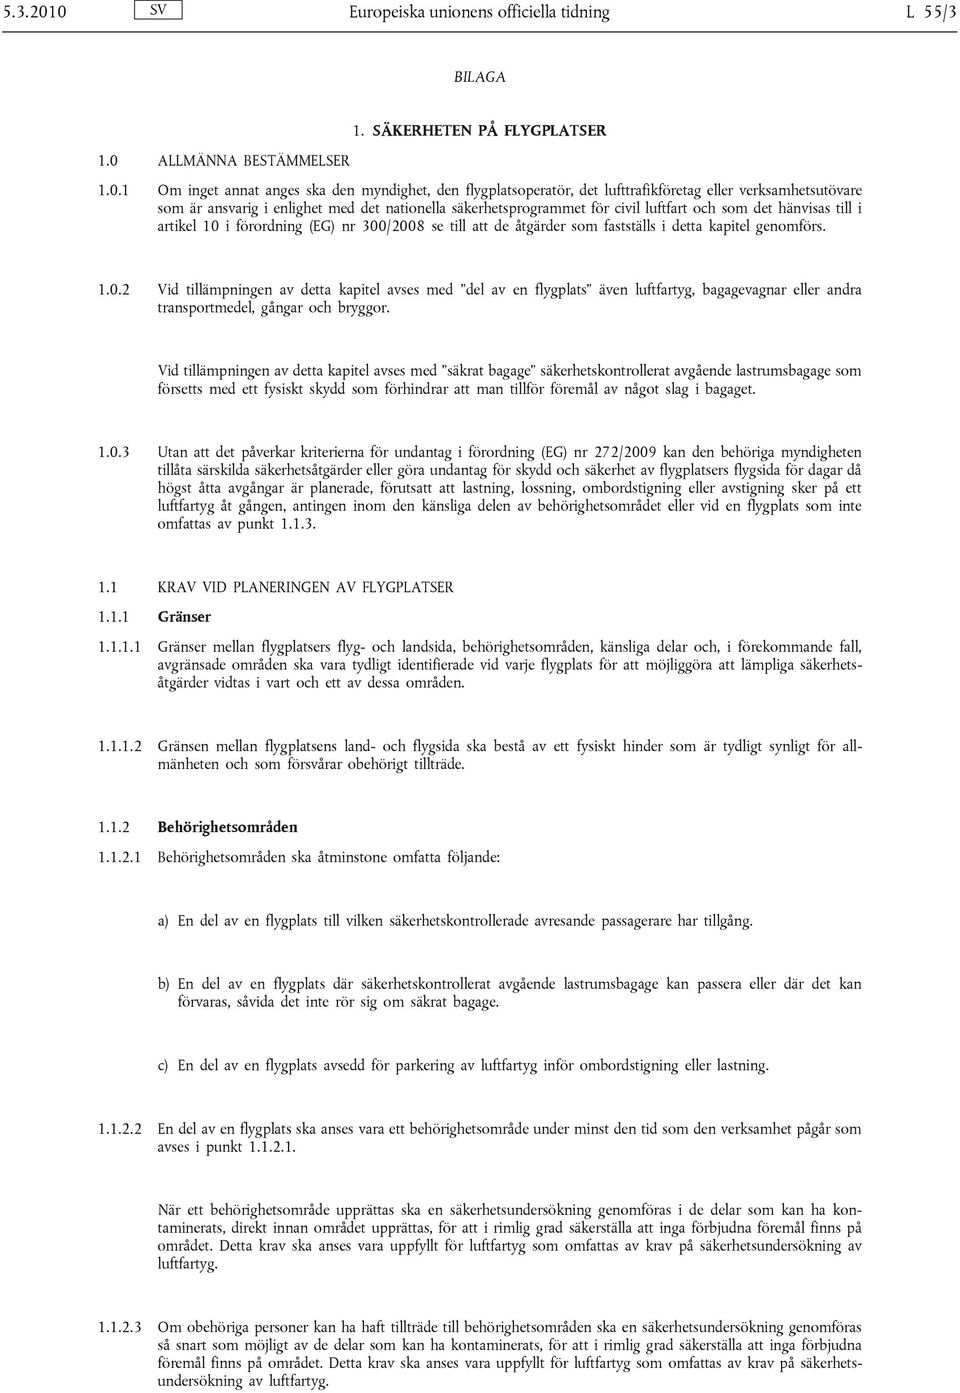 lufttrafikföretag eller verksamhetsutövare som är ansvarig i enlighet med det nationella säkerhetsprogrammet för civil luftfart och som det hänvisas till i artikel 10 i förordning (EG) nr 300/2008 se